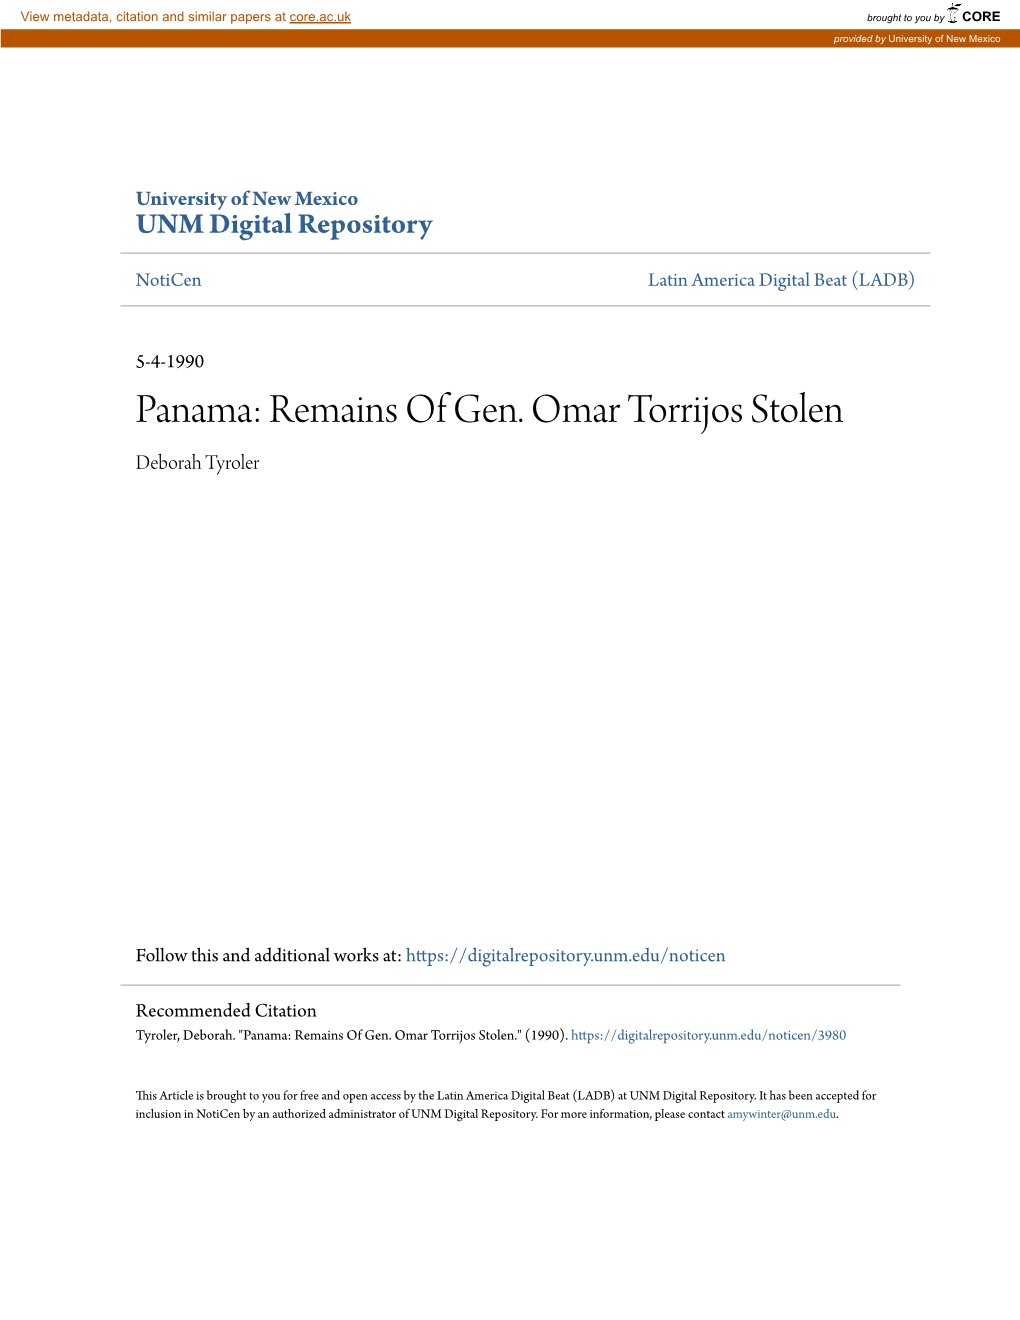 Panama: Remains of Gen. Omar Torrijos Stolen Deborah Tyroler